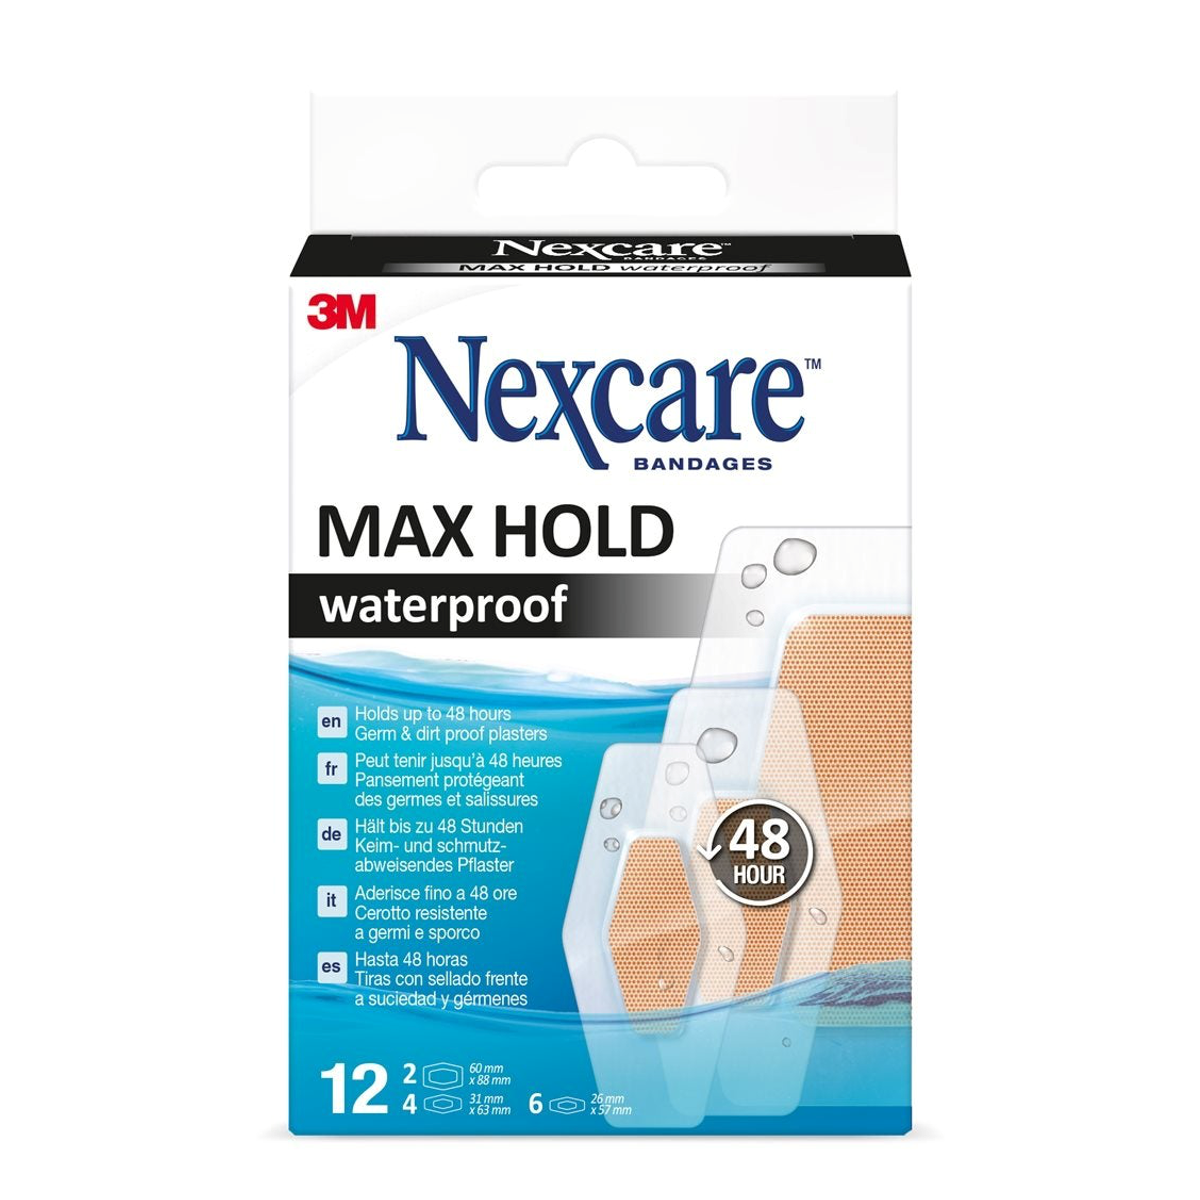 3M Nexcare Bandages max hold waterproof - Keim- und Schmutzabweisendes Pflaster